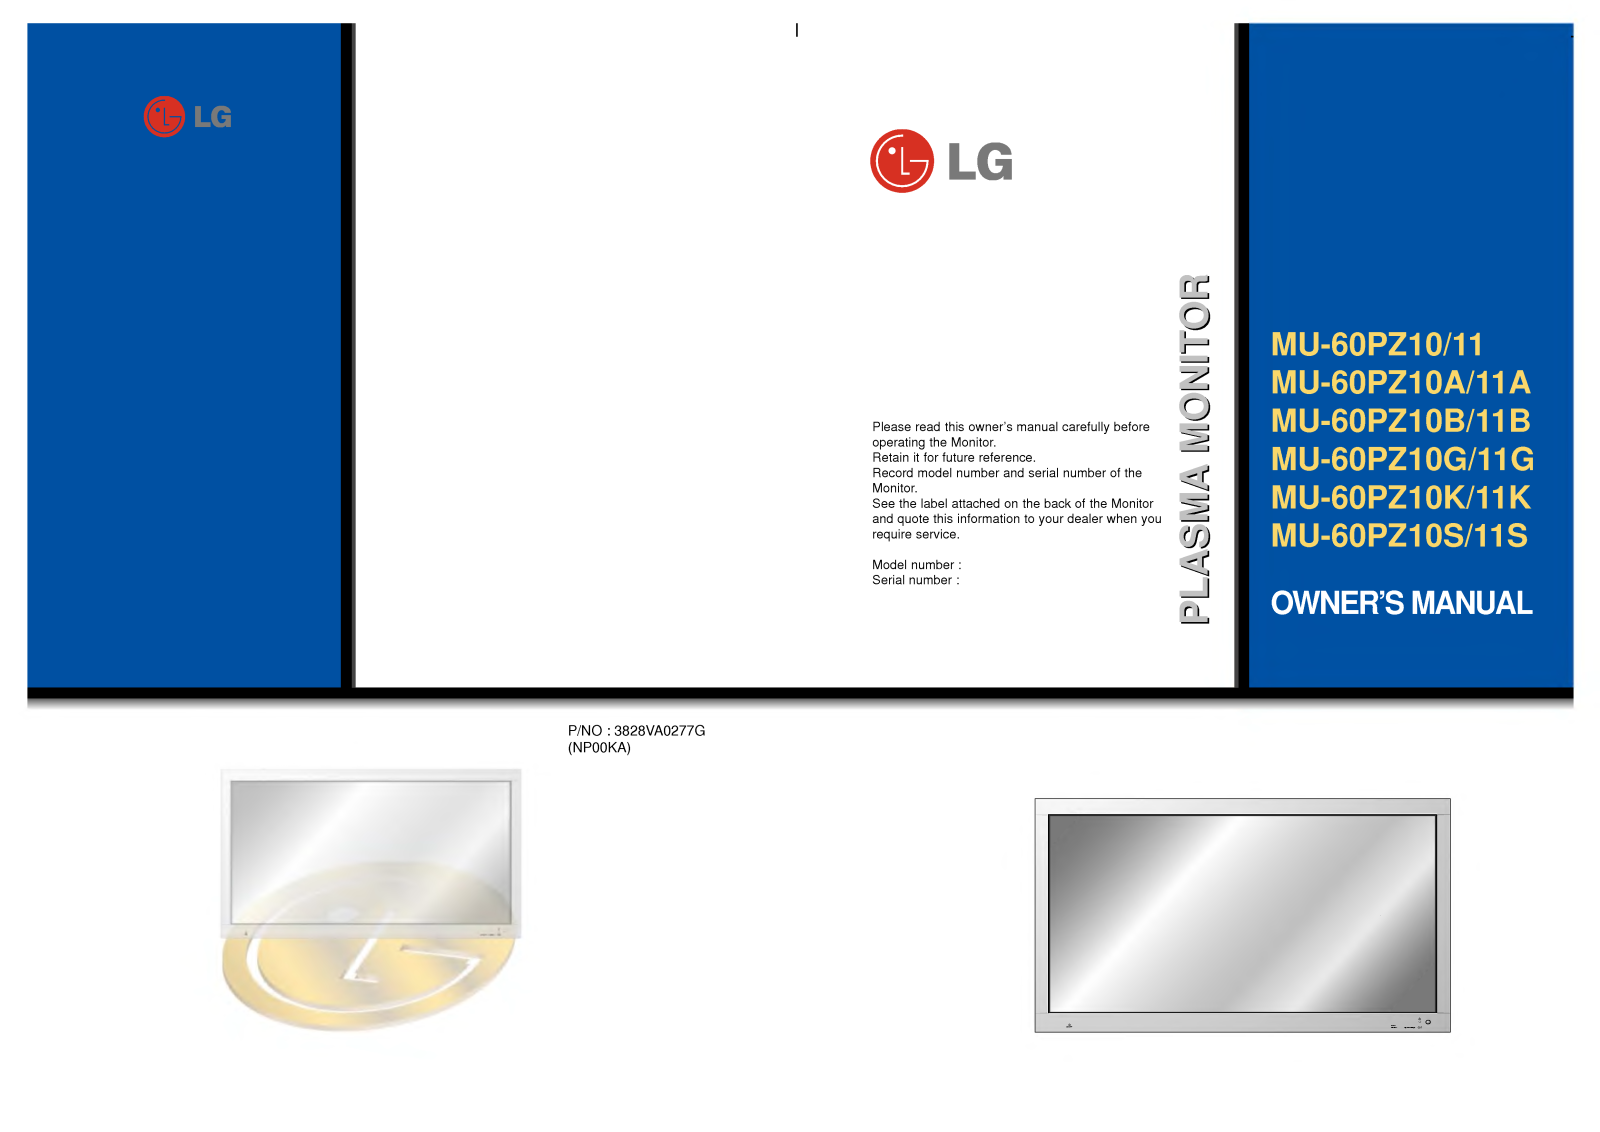 LG MU-60PZ10/11, MU-60PZ10A/11A, MU-60PZ10B/11B, MU-60PZ10G/11G, MU-60PZ10K/11K User Manual